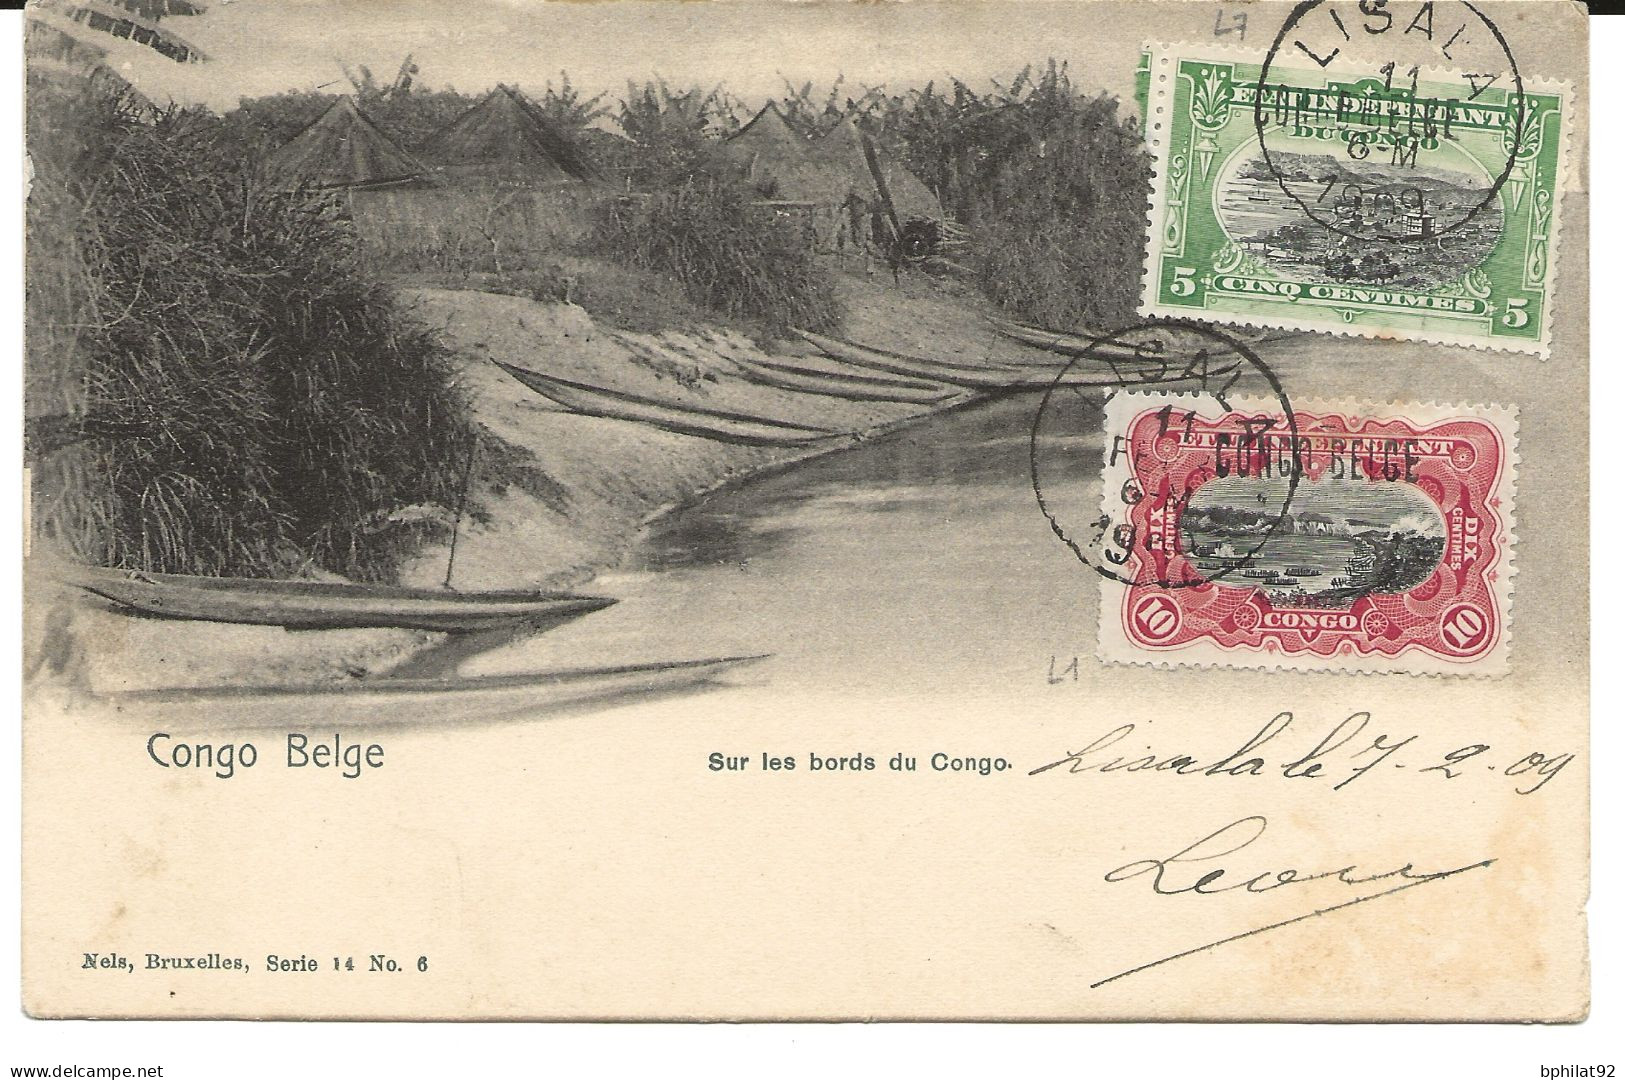 !!! CONGO, CPA DE 1909, DÉPART DE LISALA POUR BRUXELLES (BELGIQUE) - Lettres & Documents